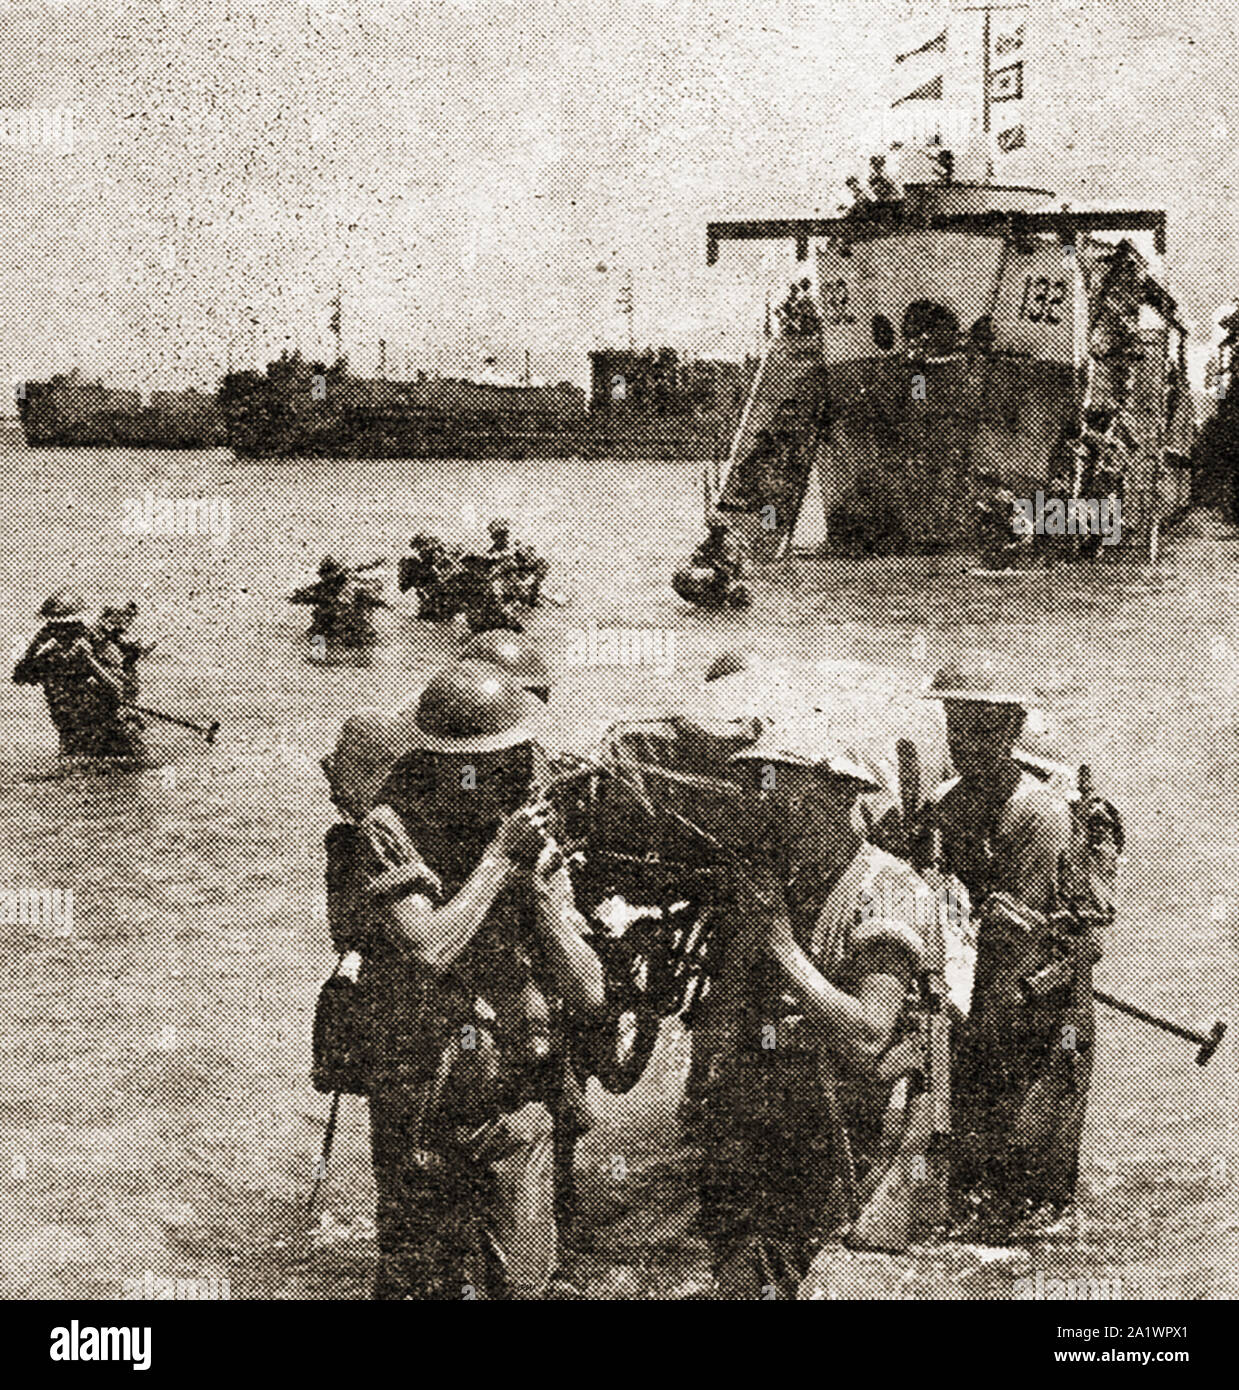 10 juillet 1943 un communiqué de photo montrant des soldats britanniques lors de l'invasion de la Sicile - l'opération Husky, WWI Banque D'Images